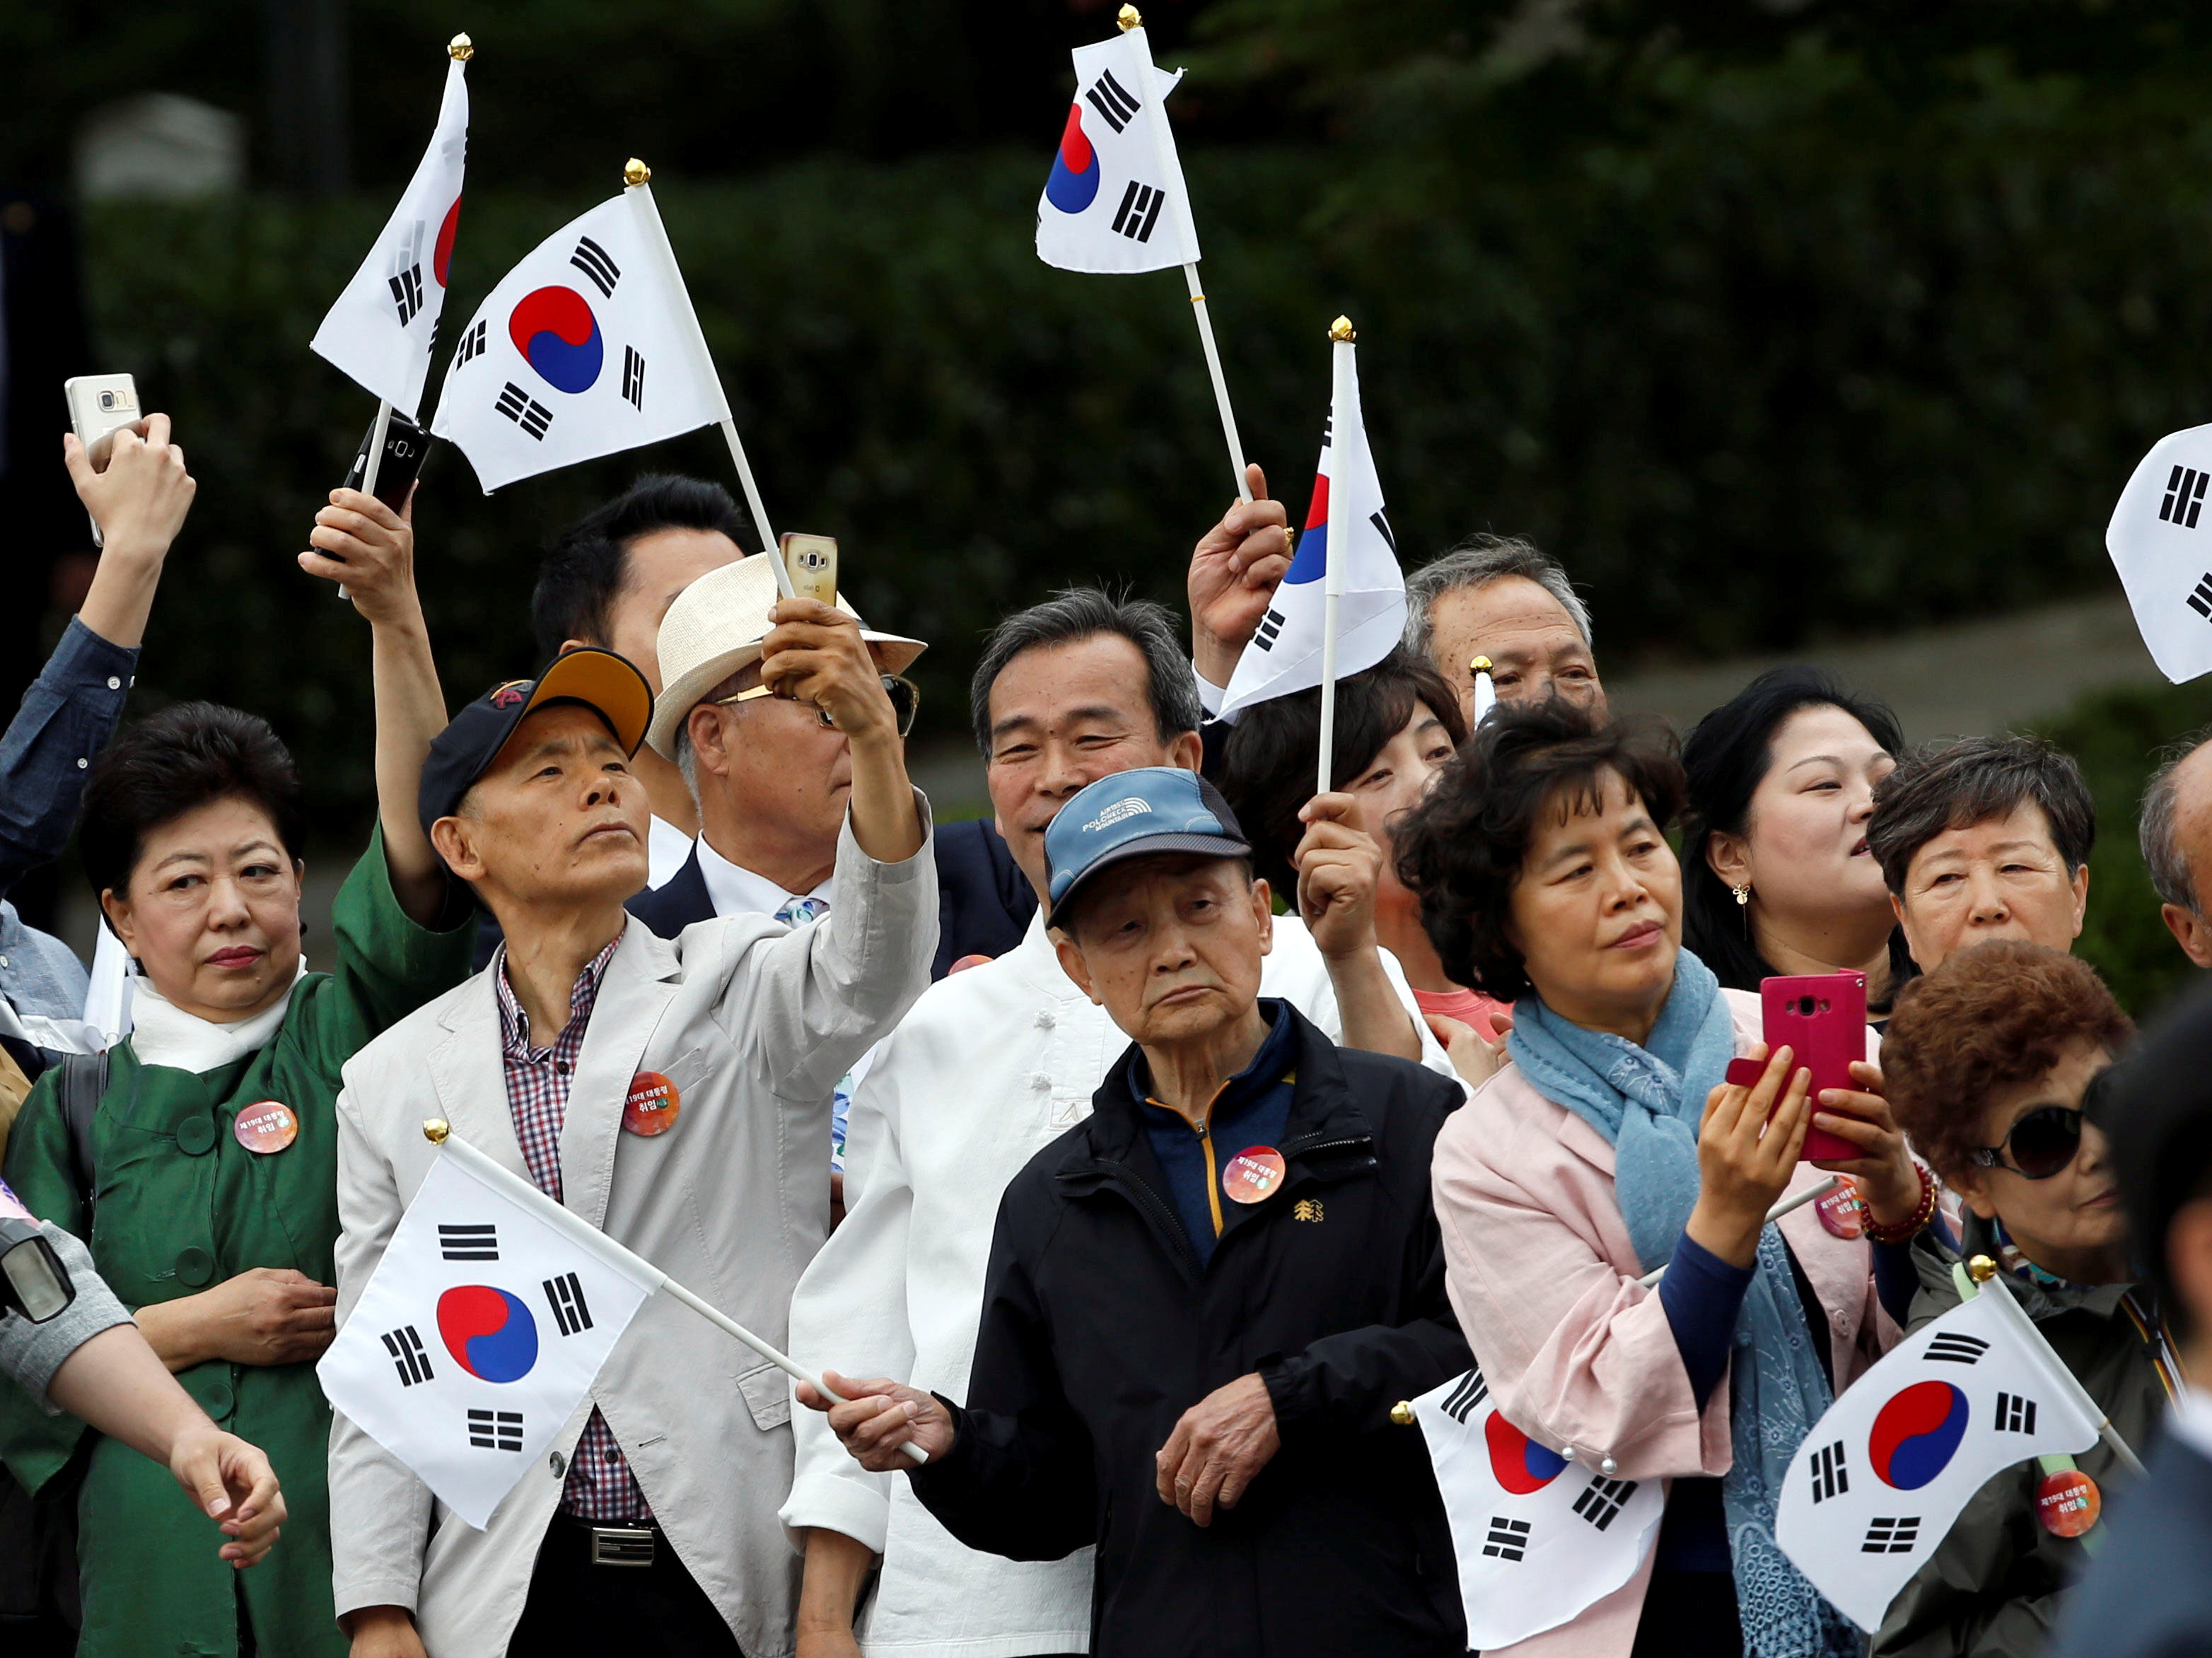 كوريون جنوبيون يرفعون علم بلادهم